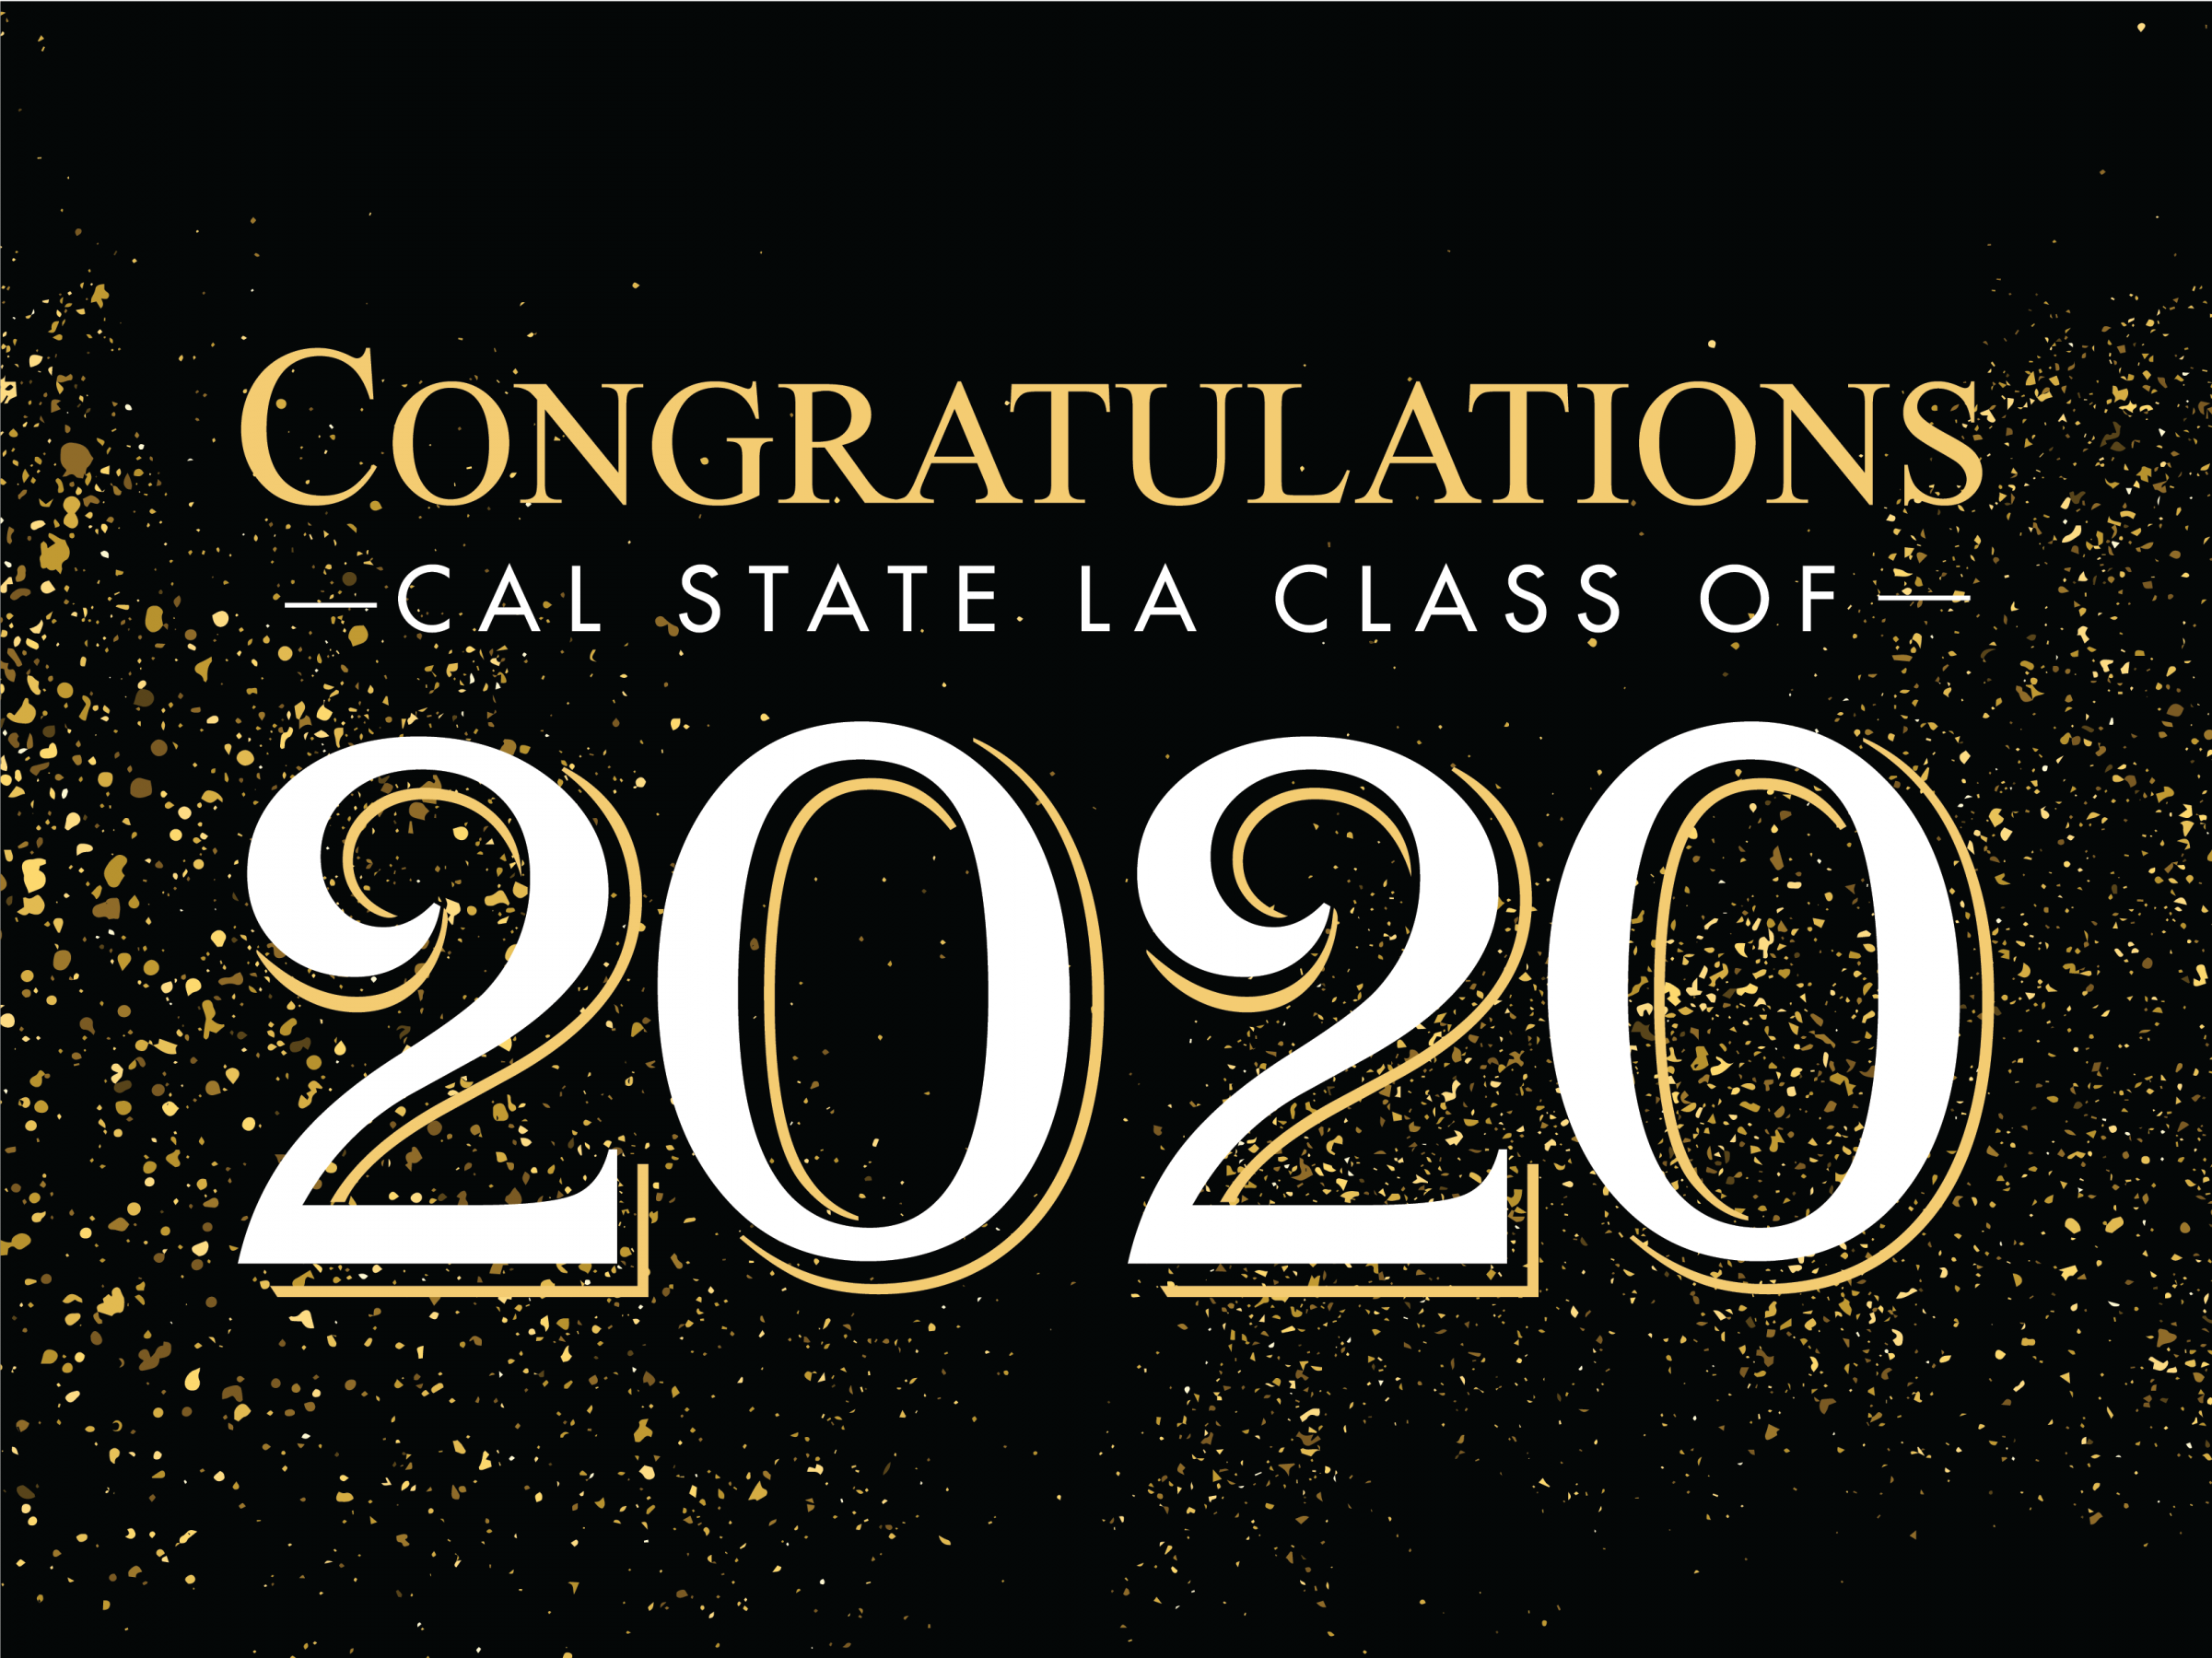 Congratulations Cal State LA Grad